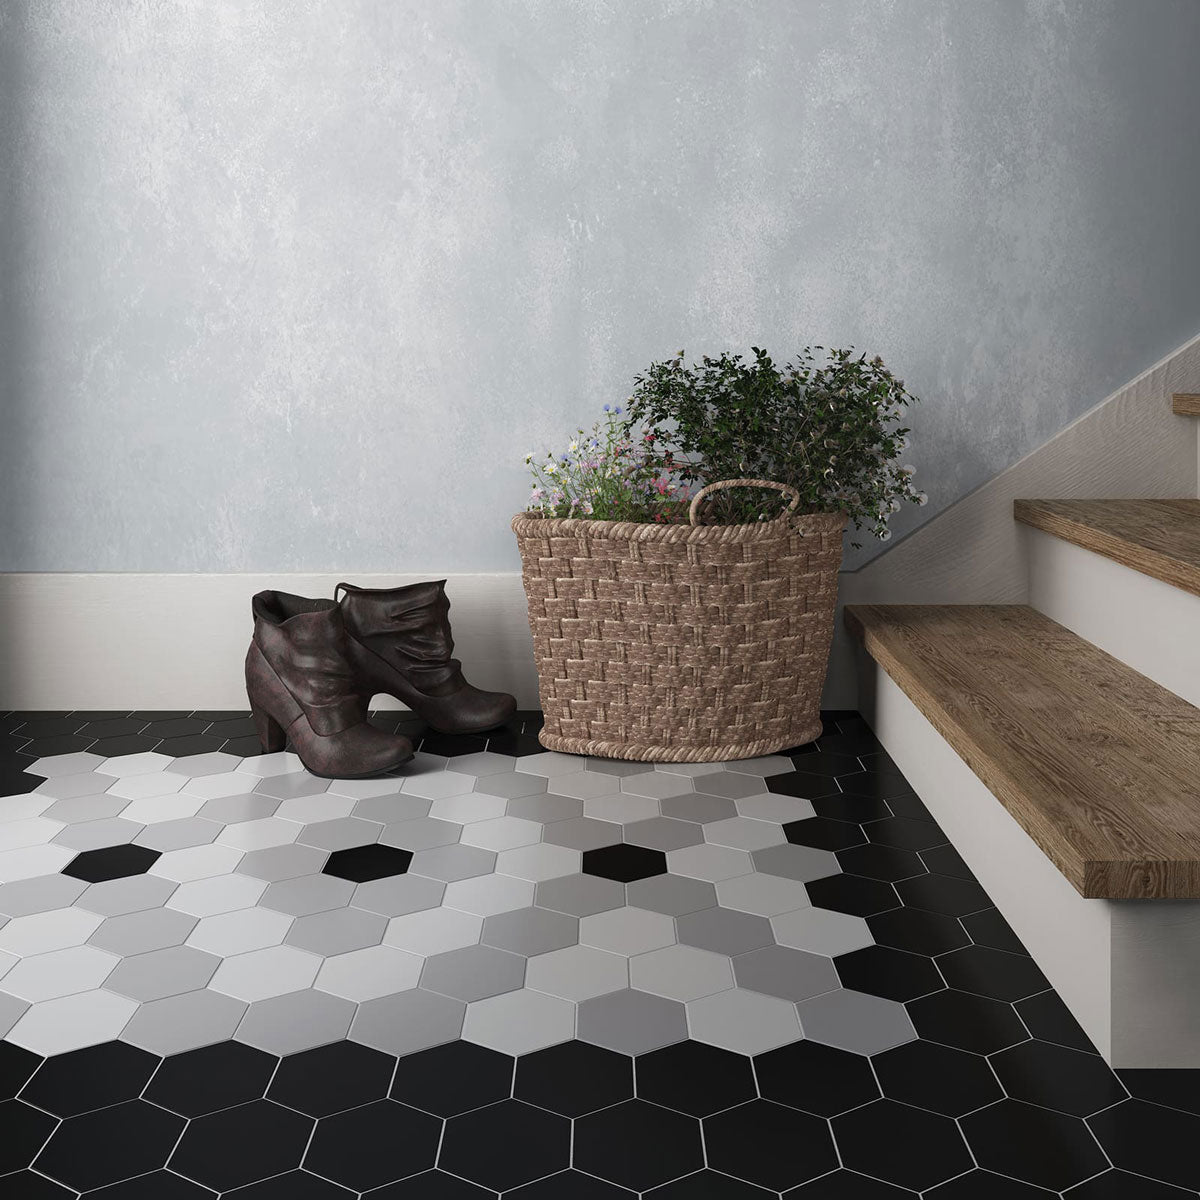 Hexagon - Entrée Noir, Blanc et Gris / Black, White and Grey Entrance